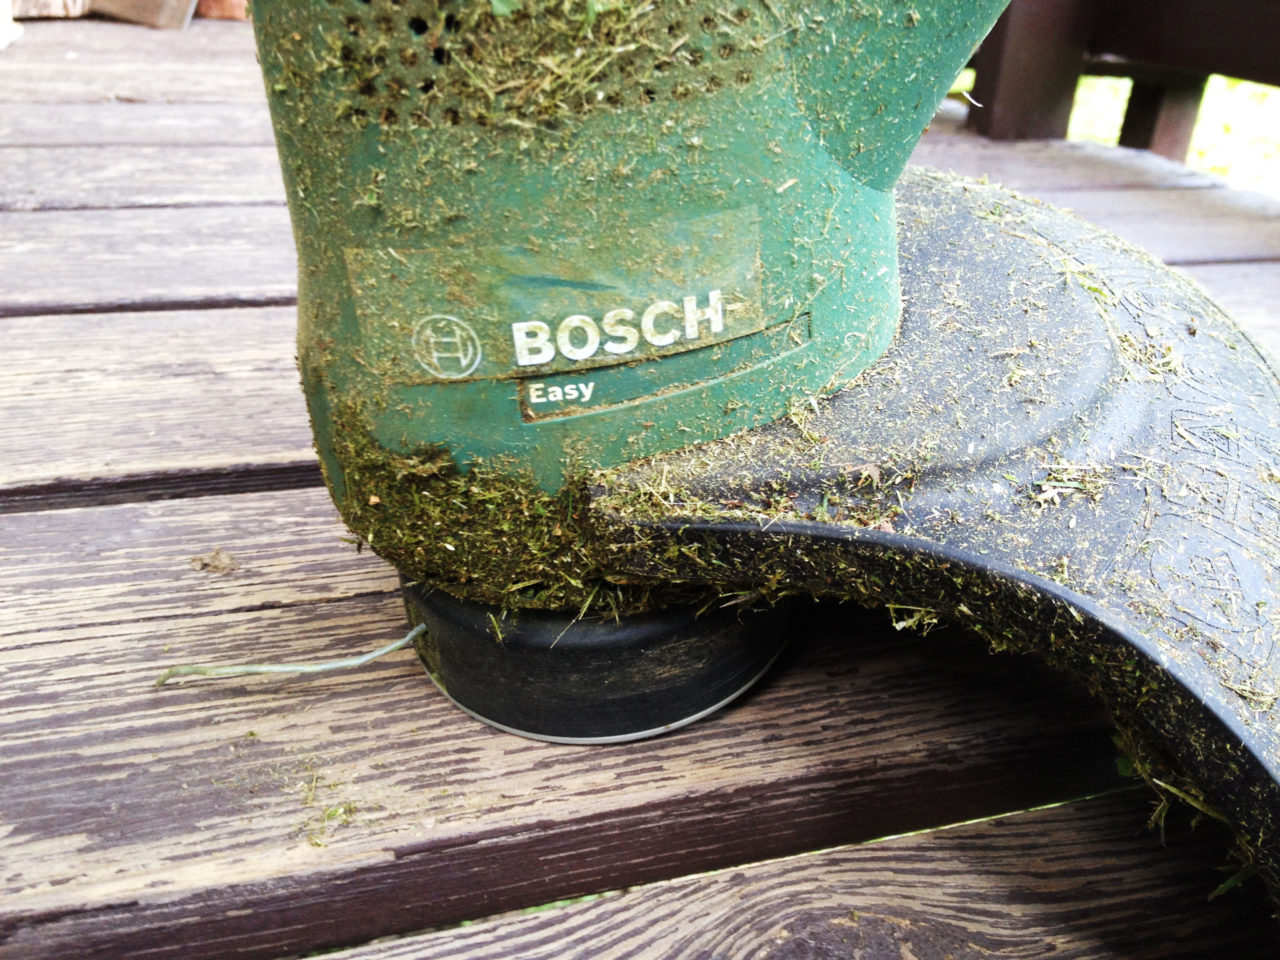 BOSCHのケーブル付き草刈機を購入